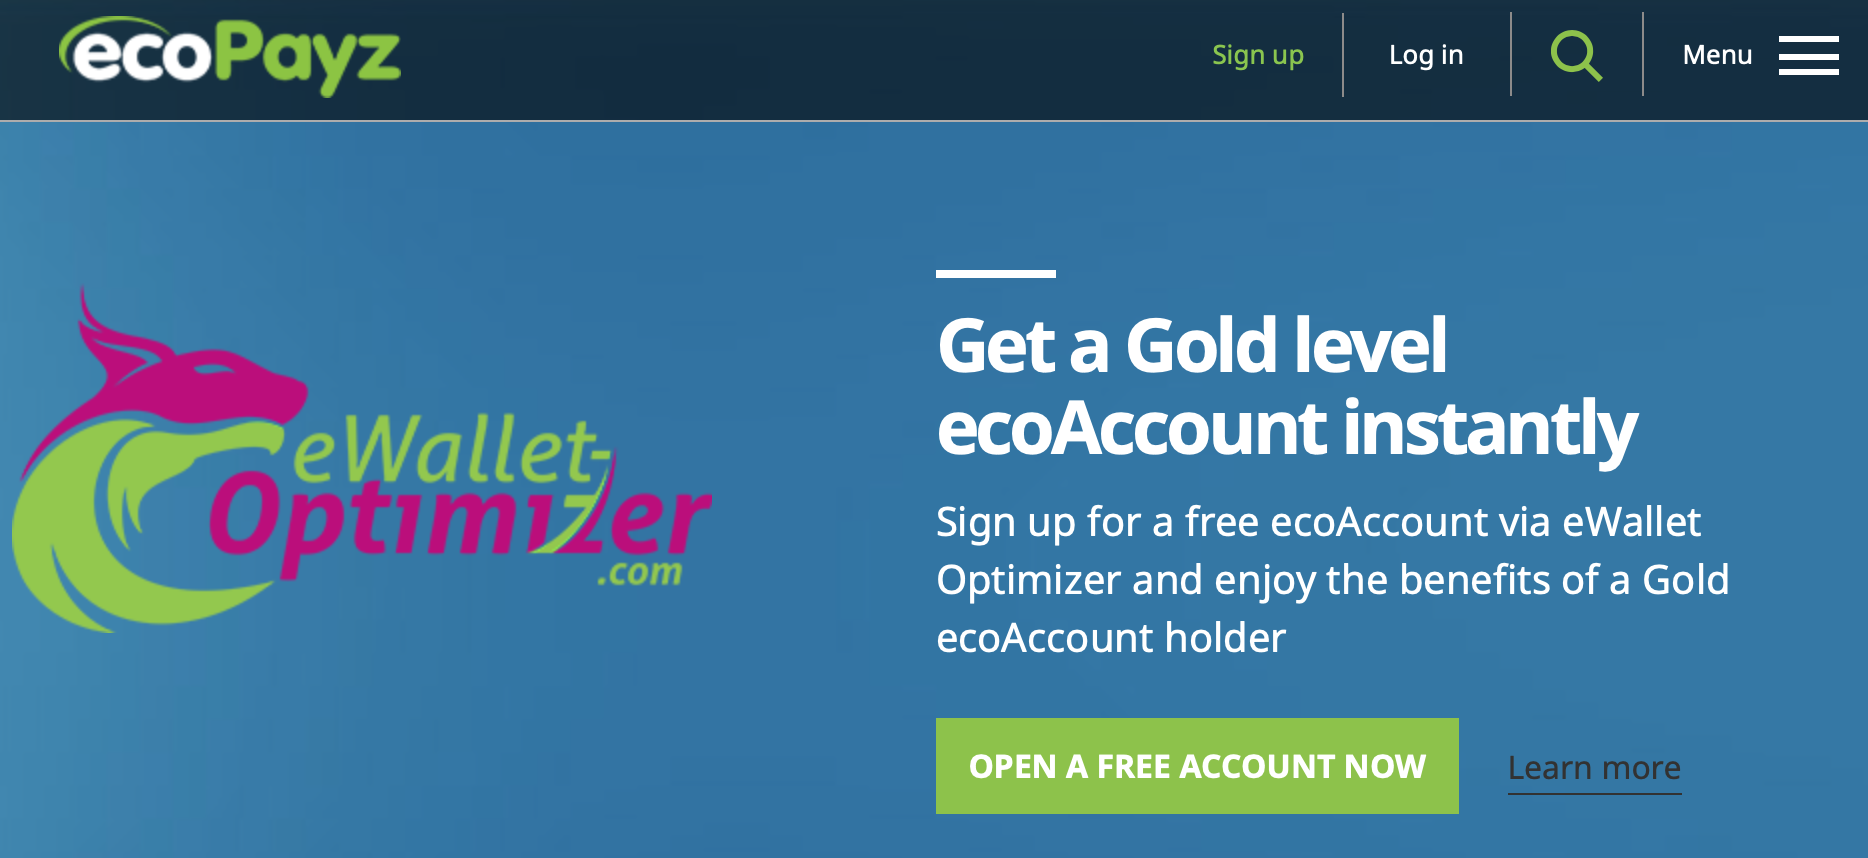 EcoPayz Online Casinos   A Modern Payment Method